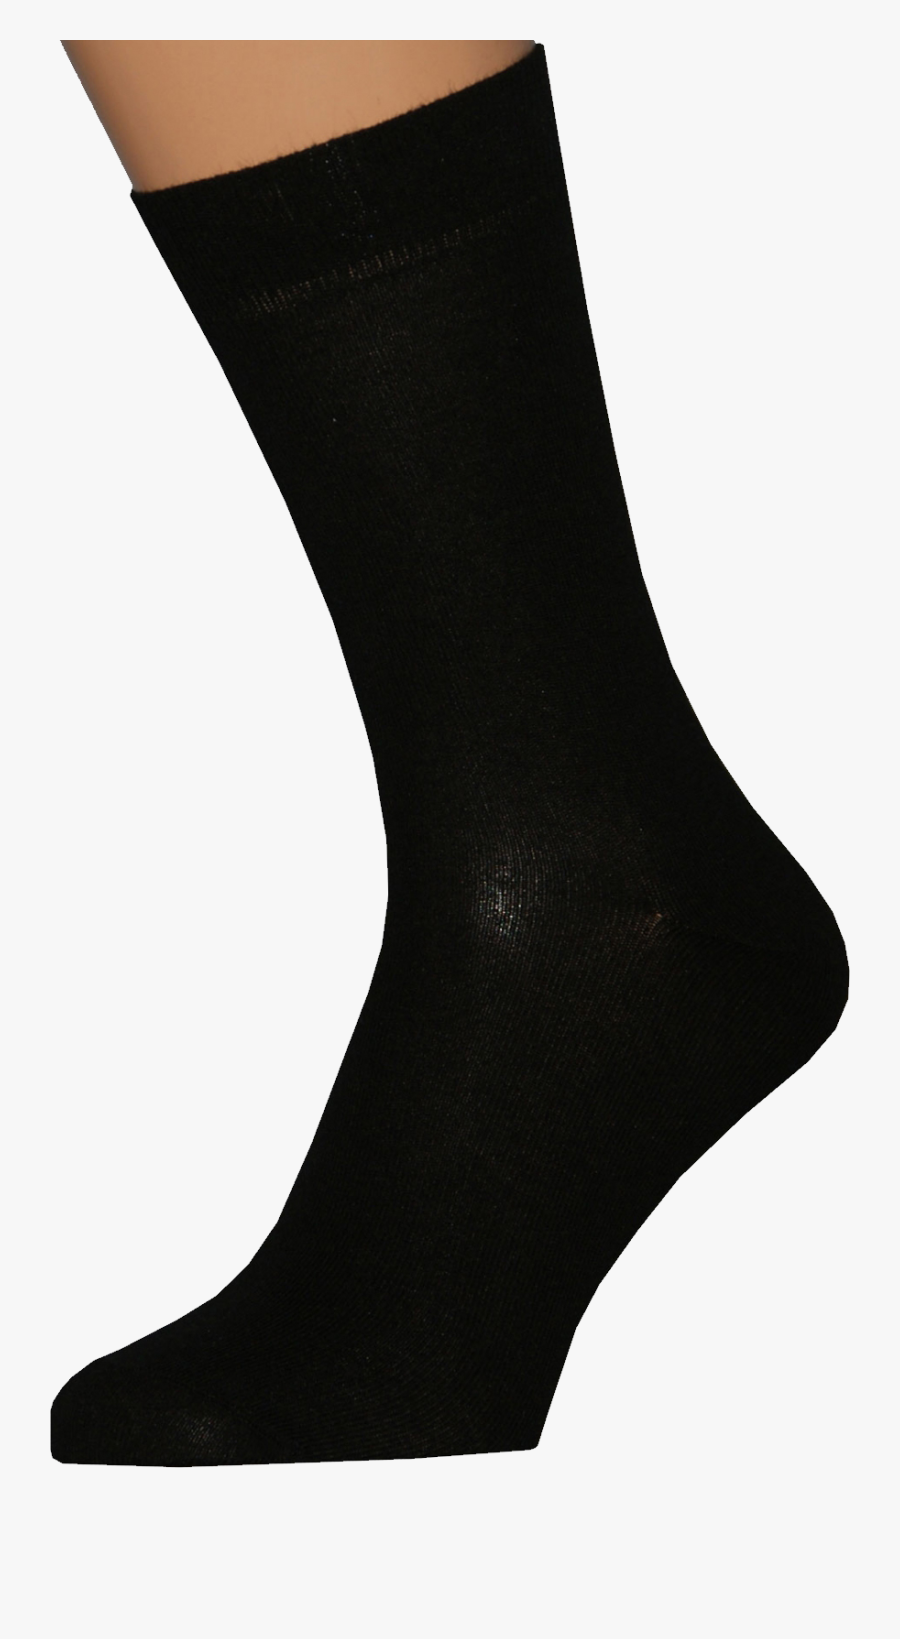 Black Socks Png Image - Transparent Background Transparent Socks, Transparent Clipart